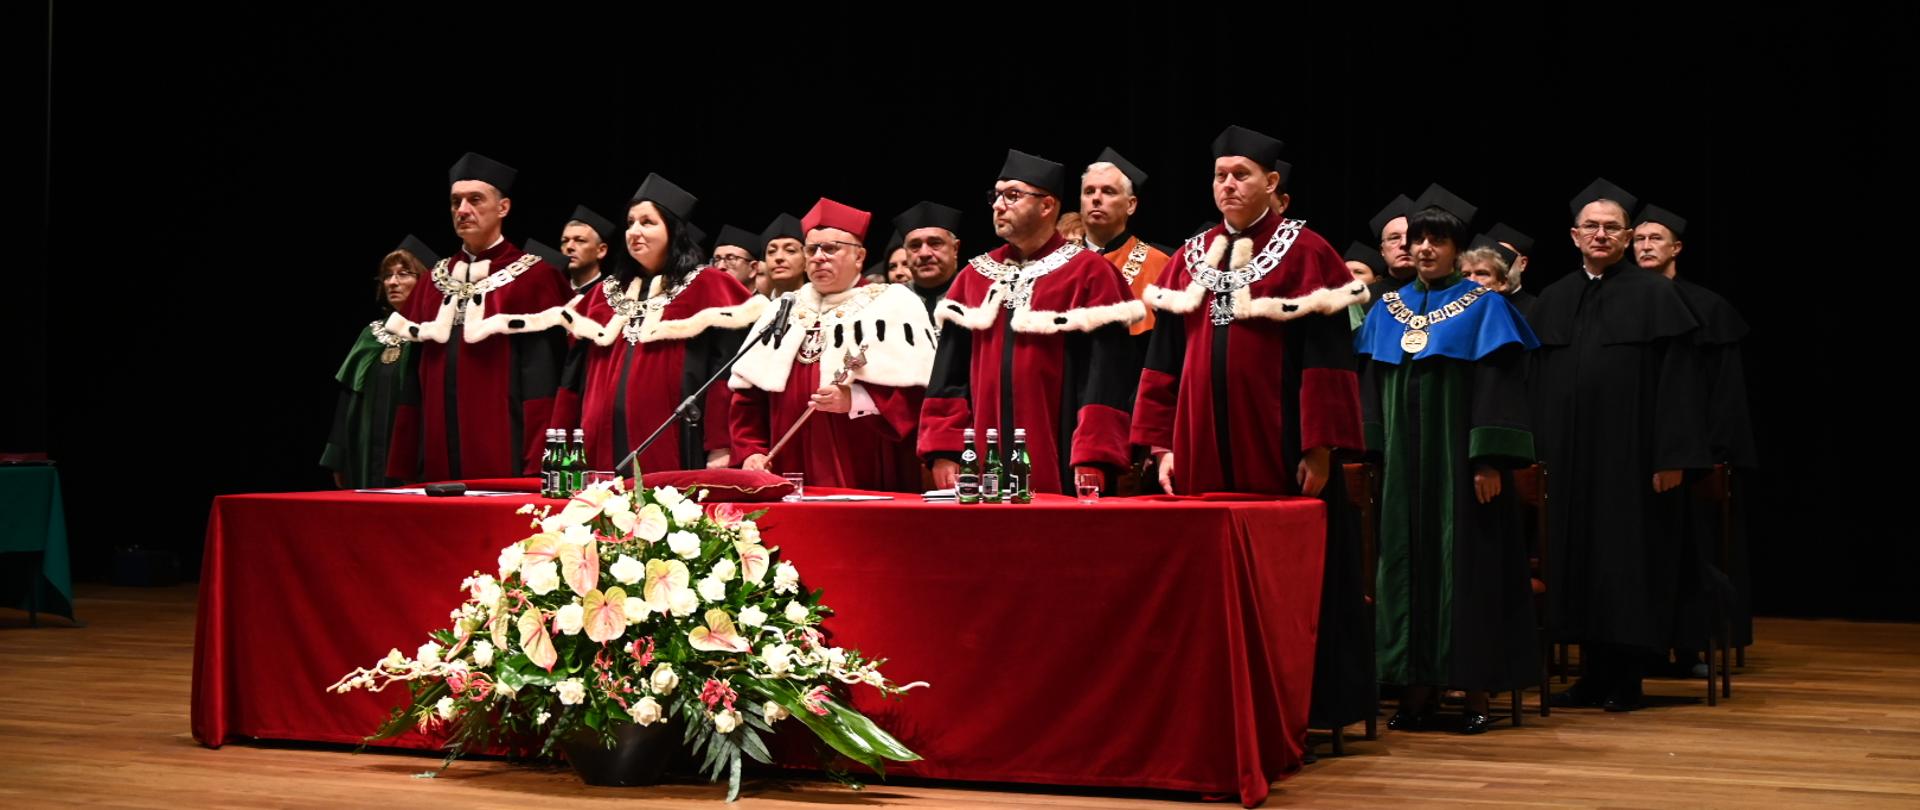 Vivat Academia, vivant professores! Inauguracja roku akademickiego na Uniwersytecie Przyrodniczym w Lublinie